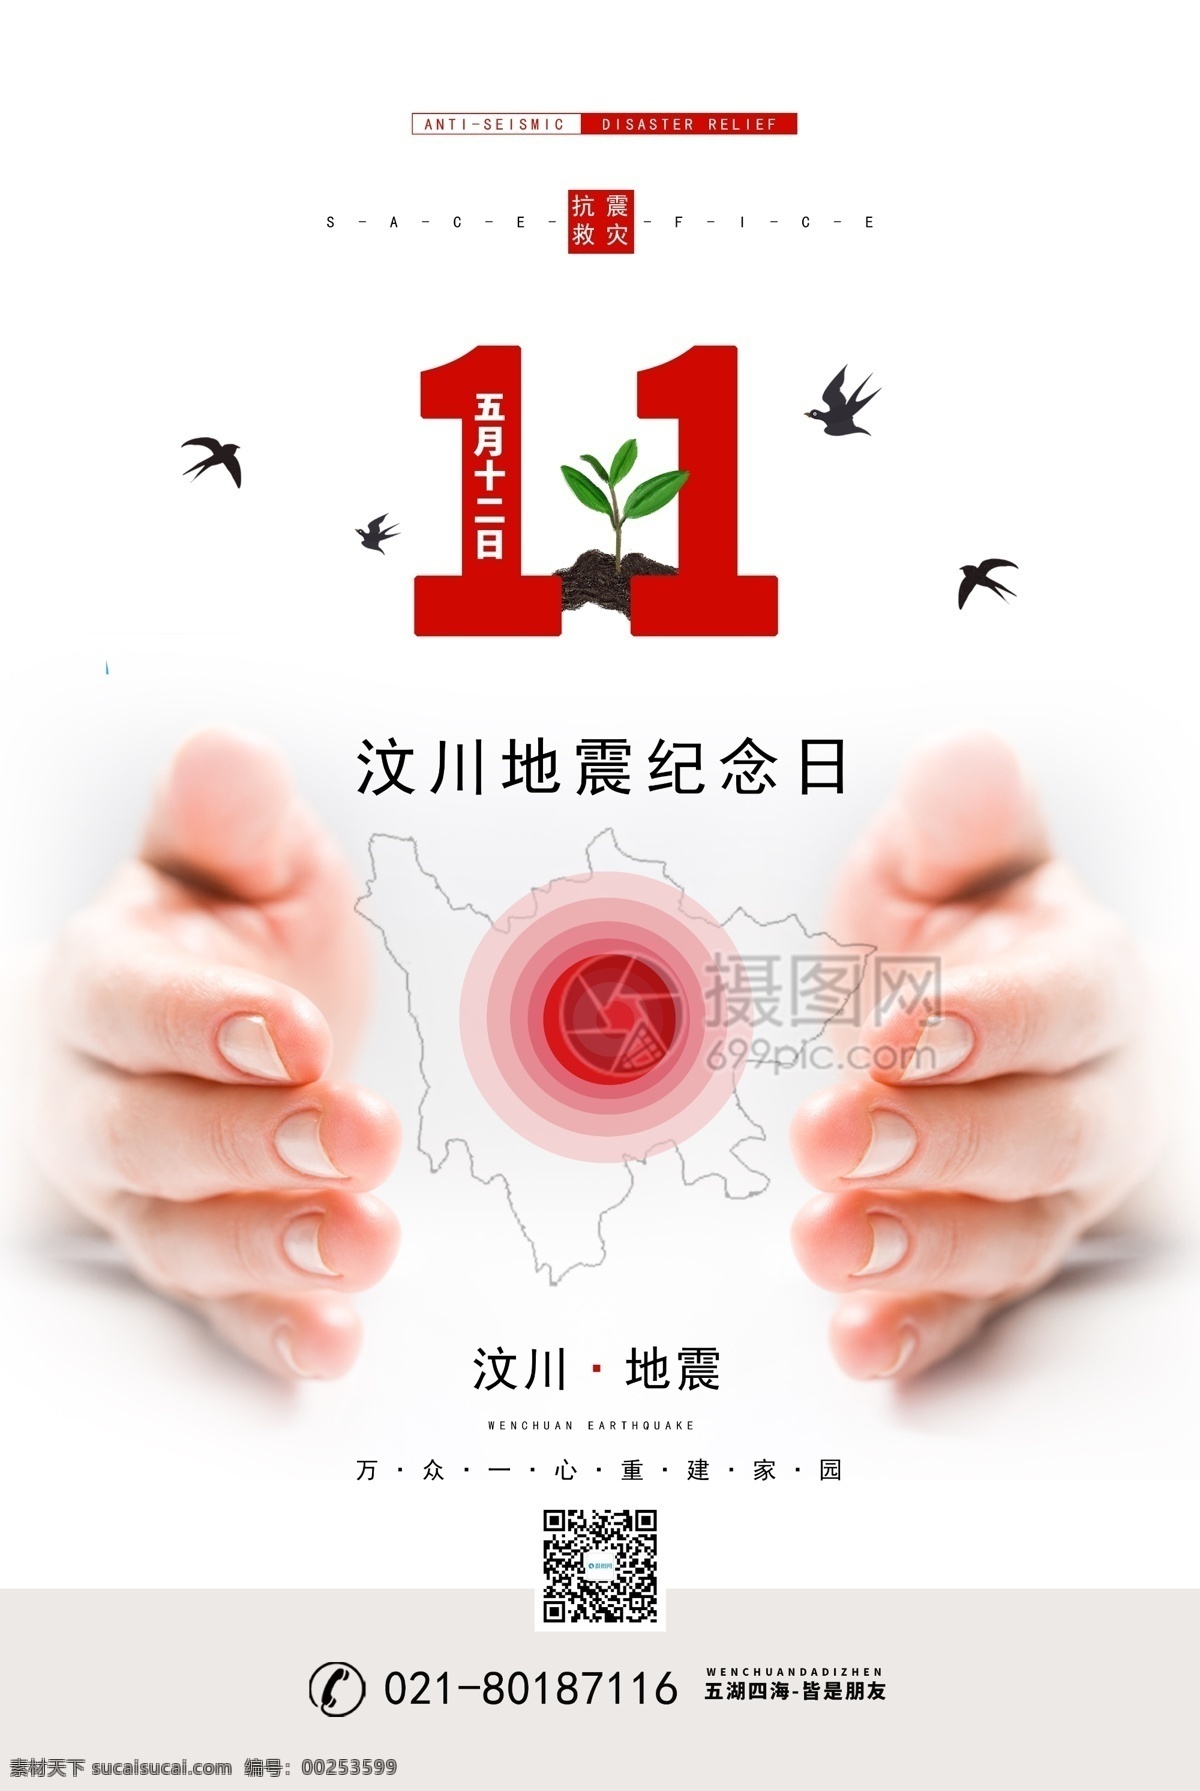 汶川 地震 周年 纪念日 海报 简约 白色 节日海报